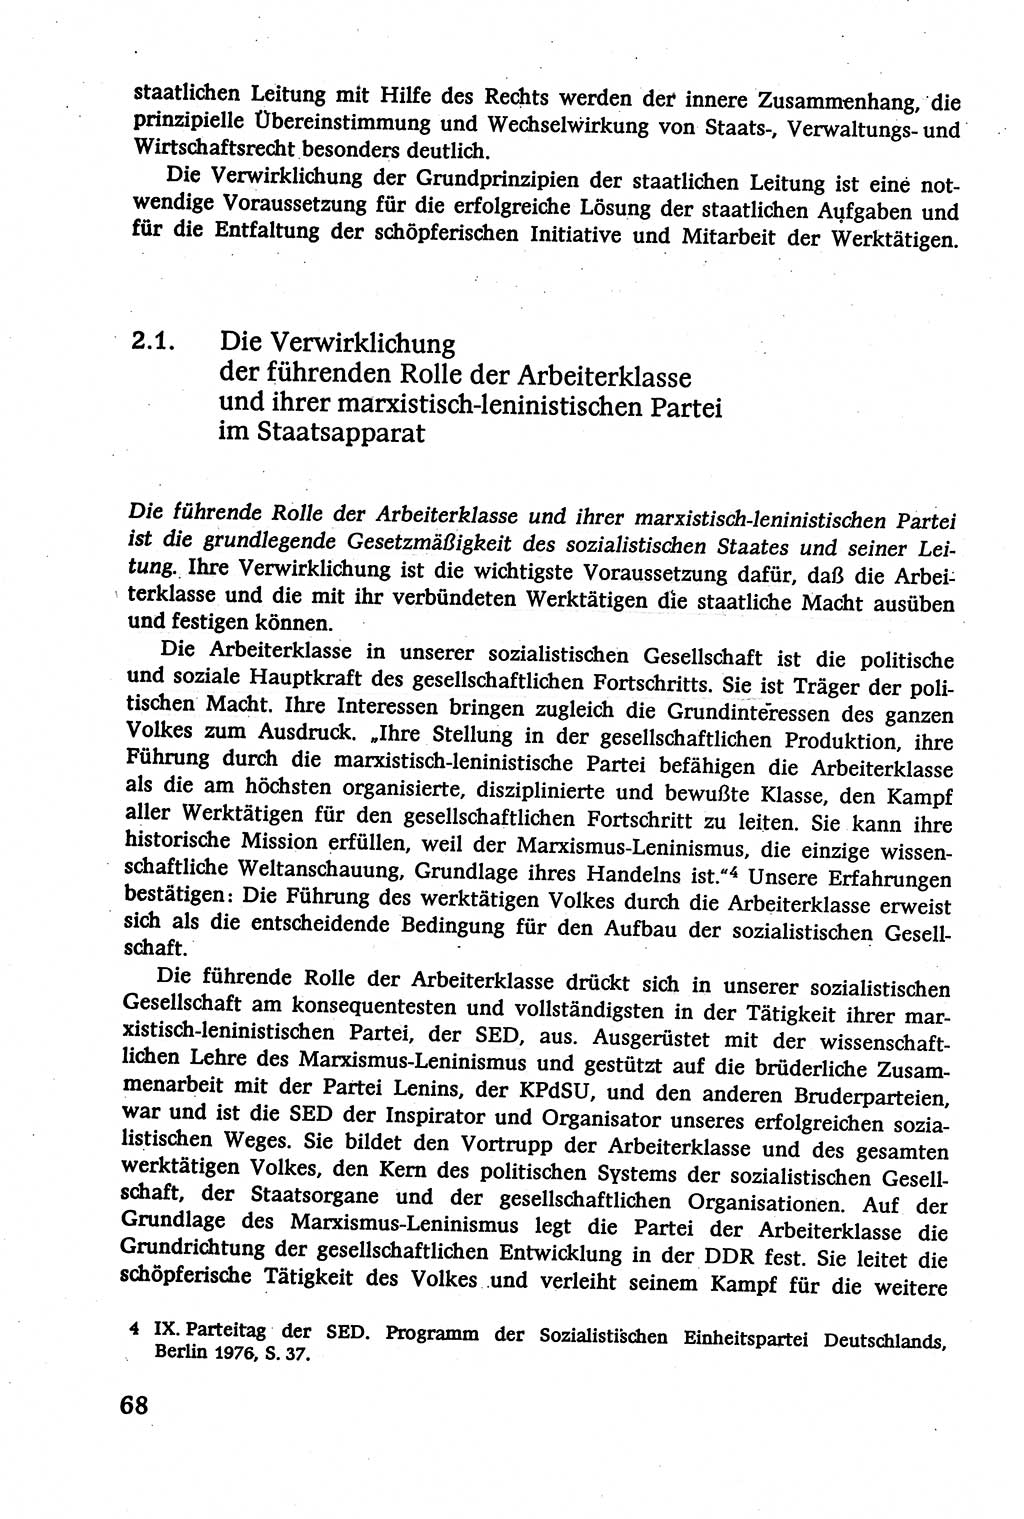 Verwaltungsrecht [Deutsche Demokratische Republik (DDR)], Lehrbuch 1979, Seite 68 (Verw.-R. DDR Lb. 1979, S. 68)